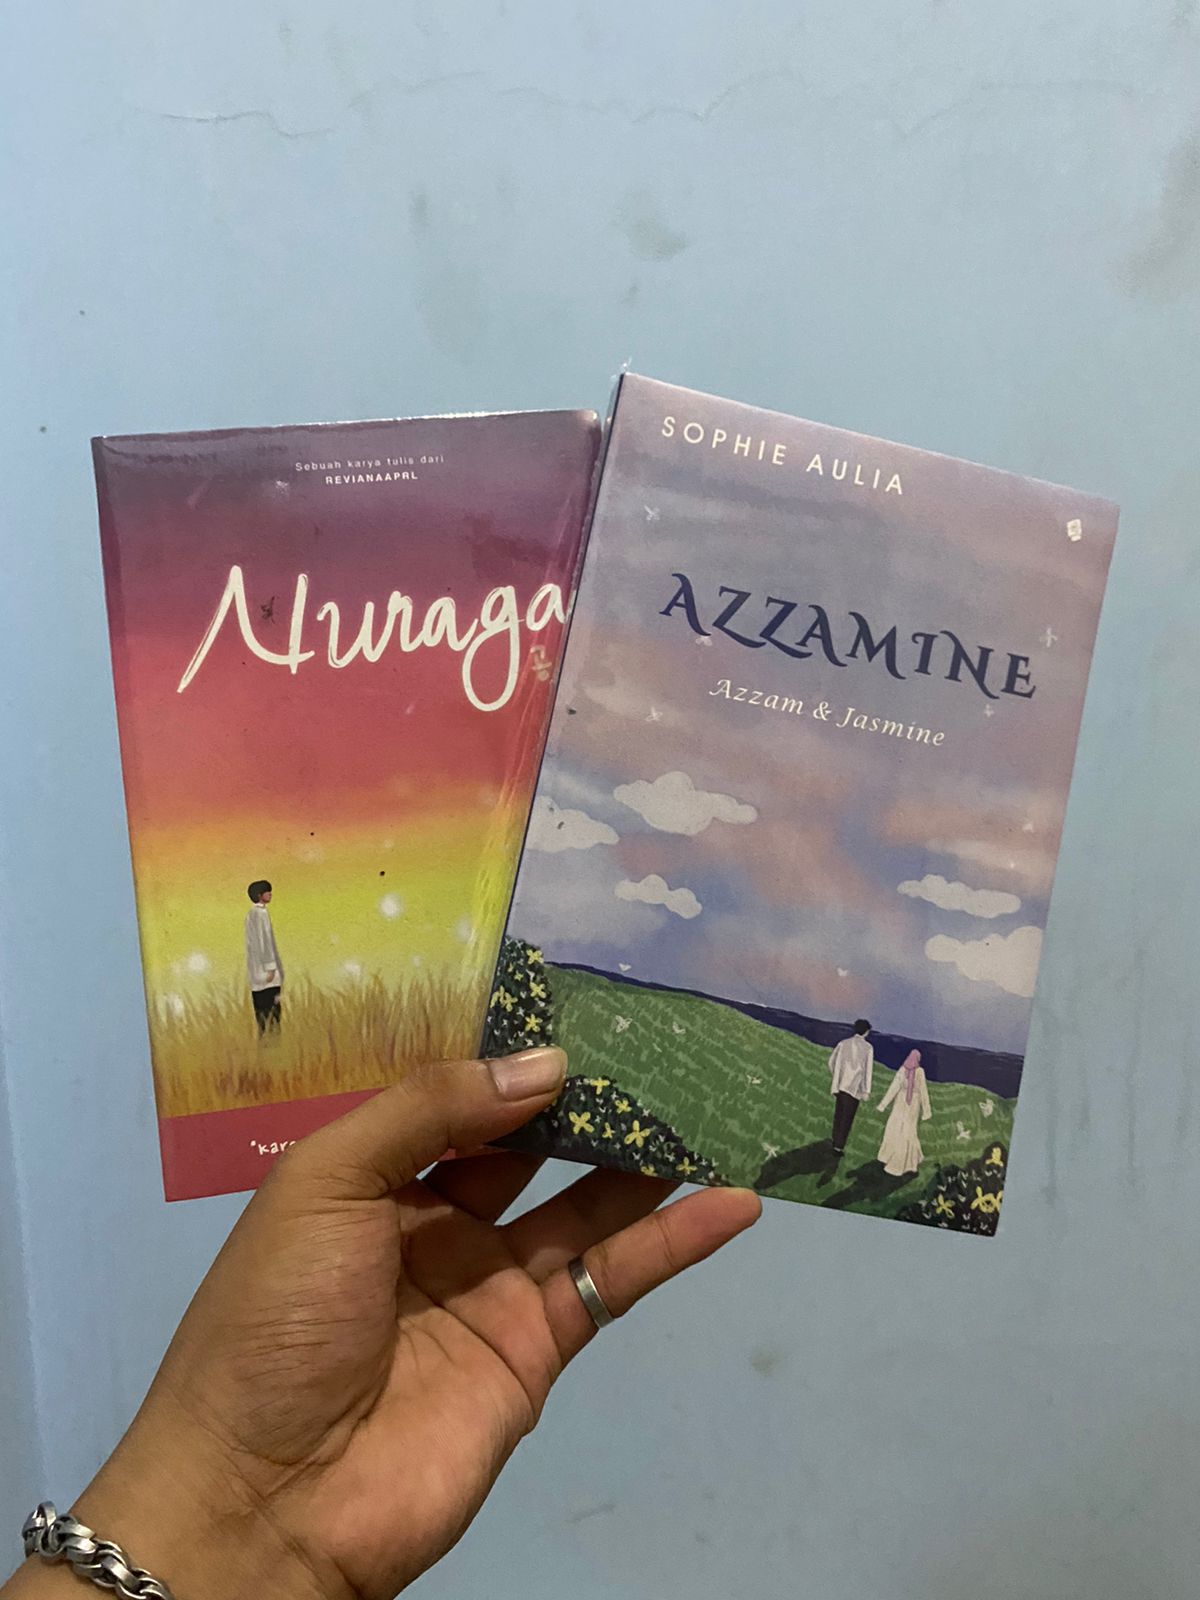 review novel azzamine